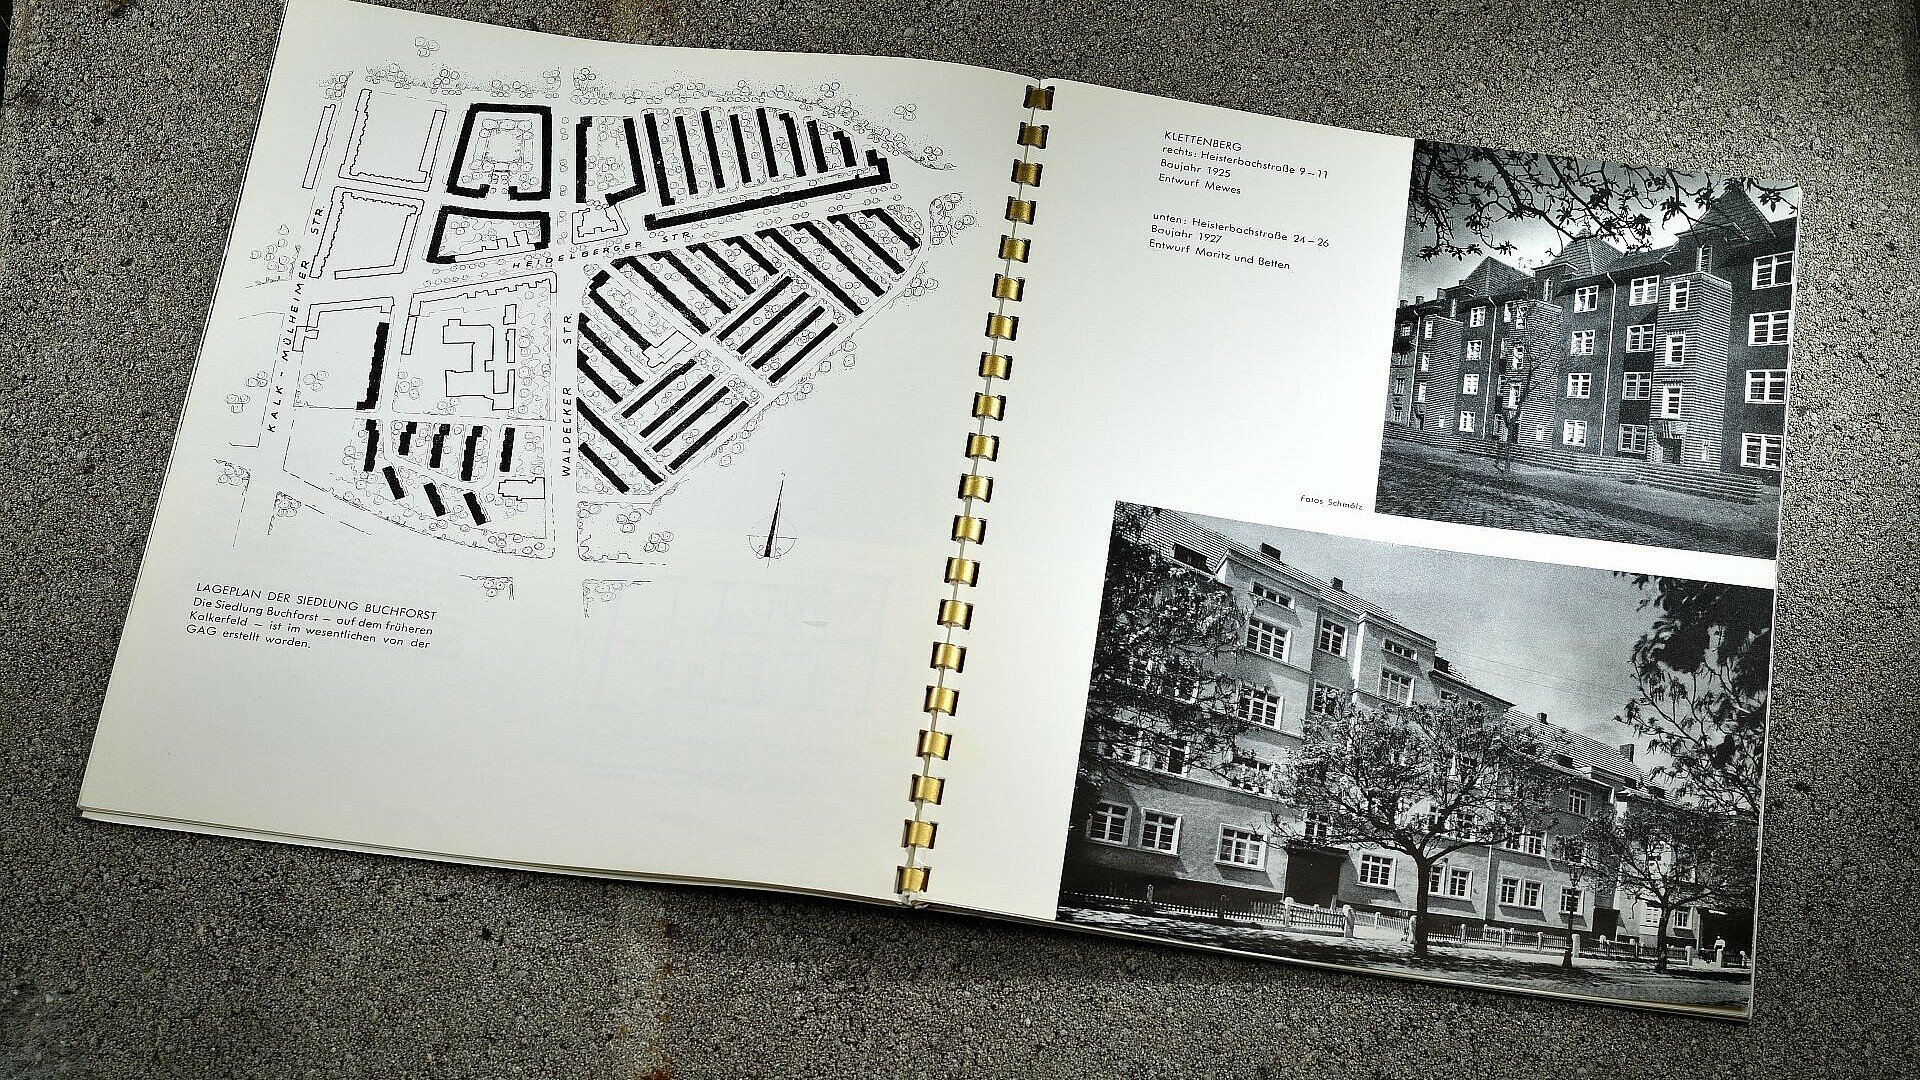 GAG-Broschüre zeigt historische Siedlungen in Köln